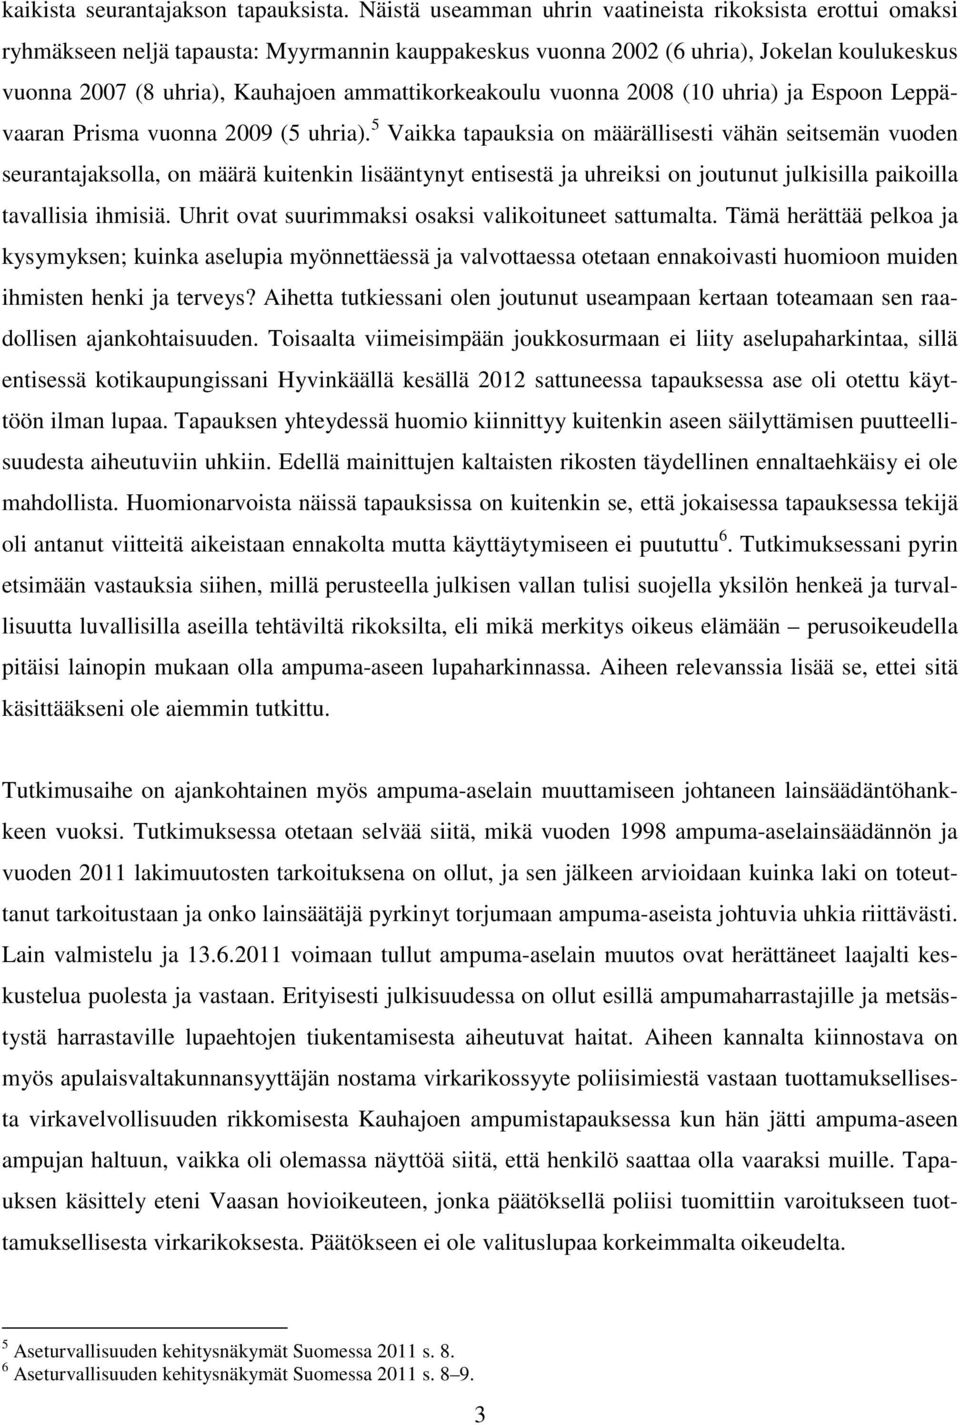 ammattikorkeakoulu vuonna 2008 (10 uhria) ja Espoon Leppävaaran Prisma vuonna 2009 (5 uhria).